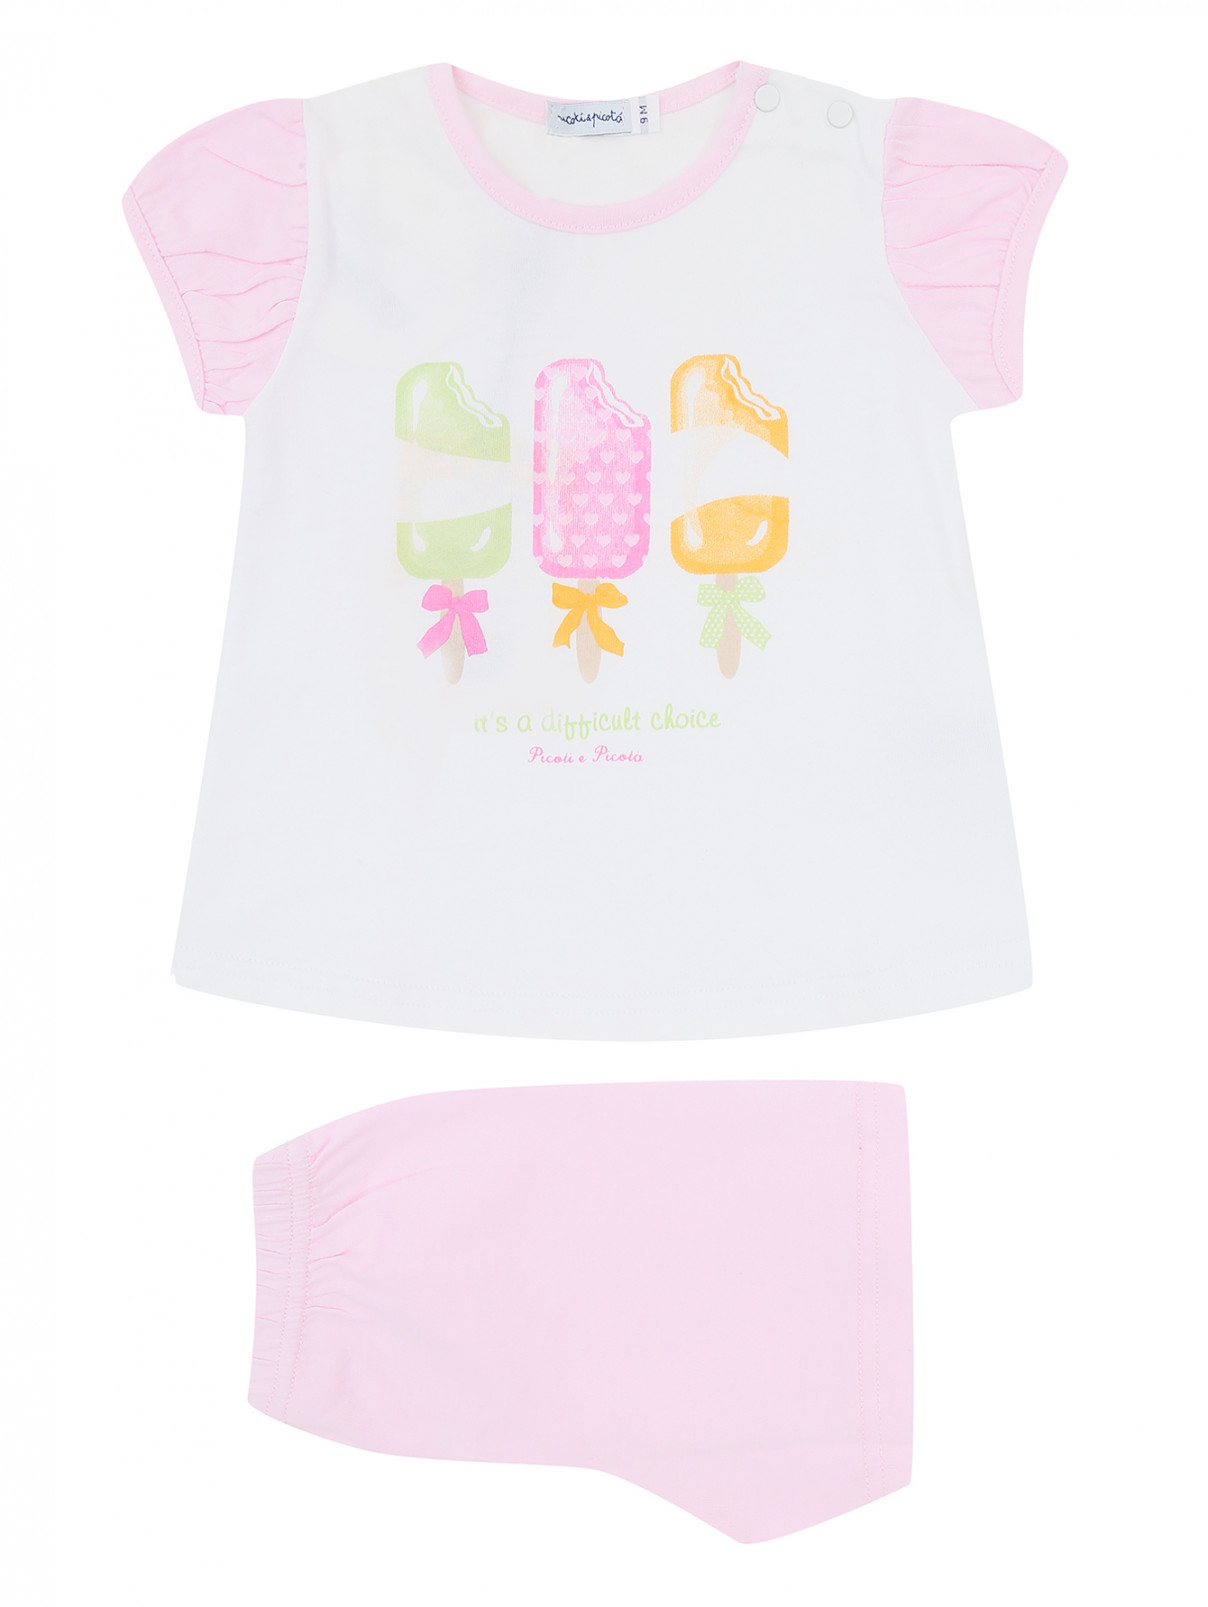 Пижама из хлопка с принтом Picoti&Picota  –  Общий вид  – Цвет:  Розовый